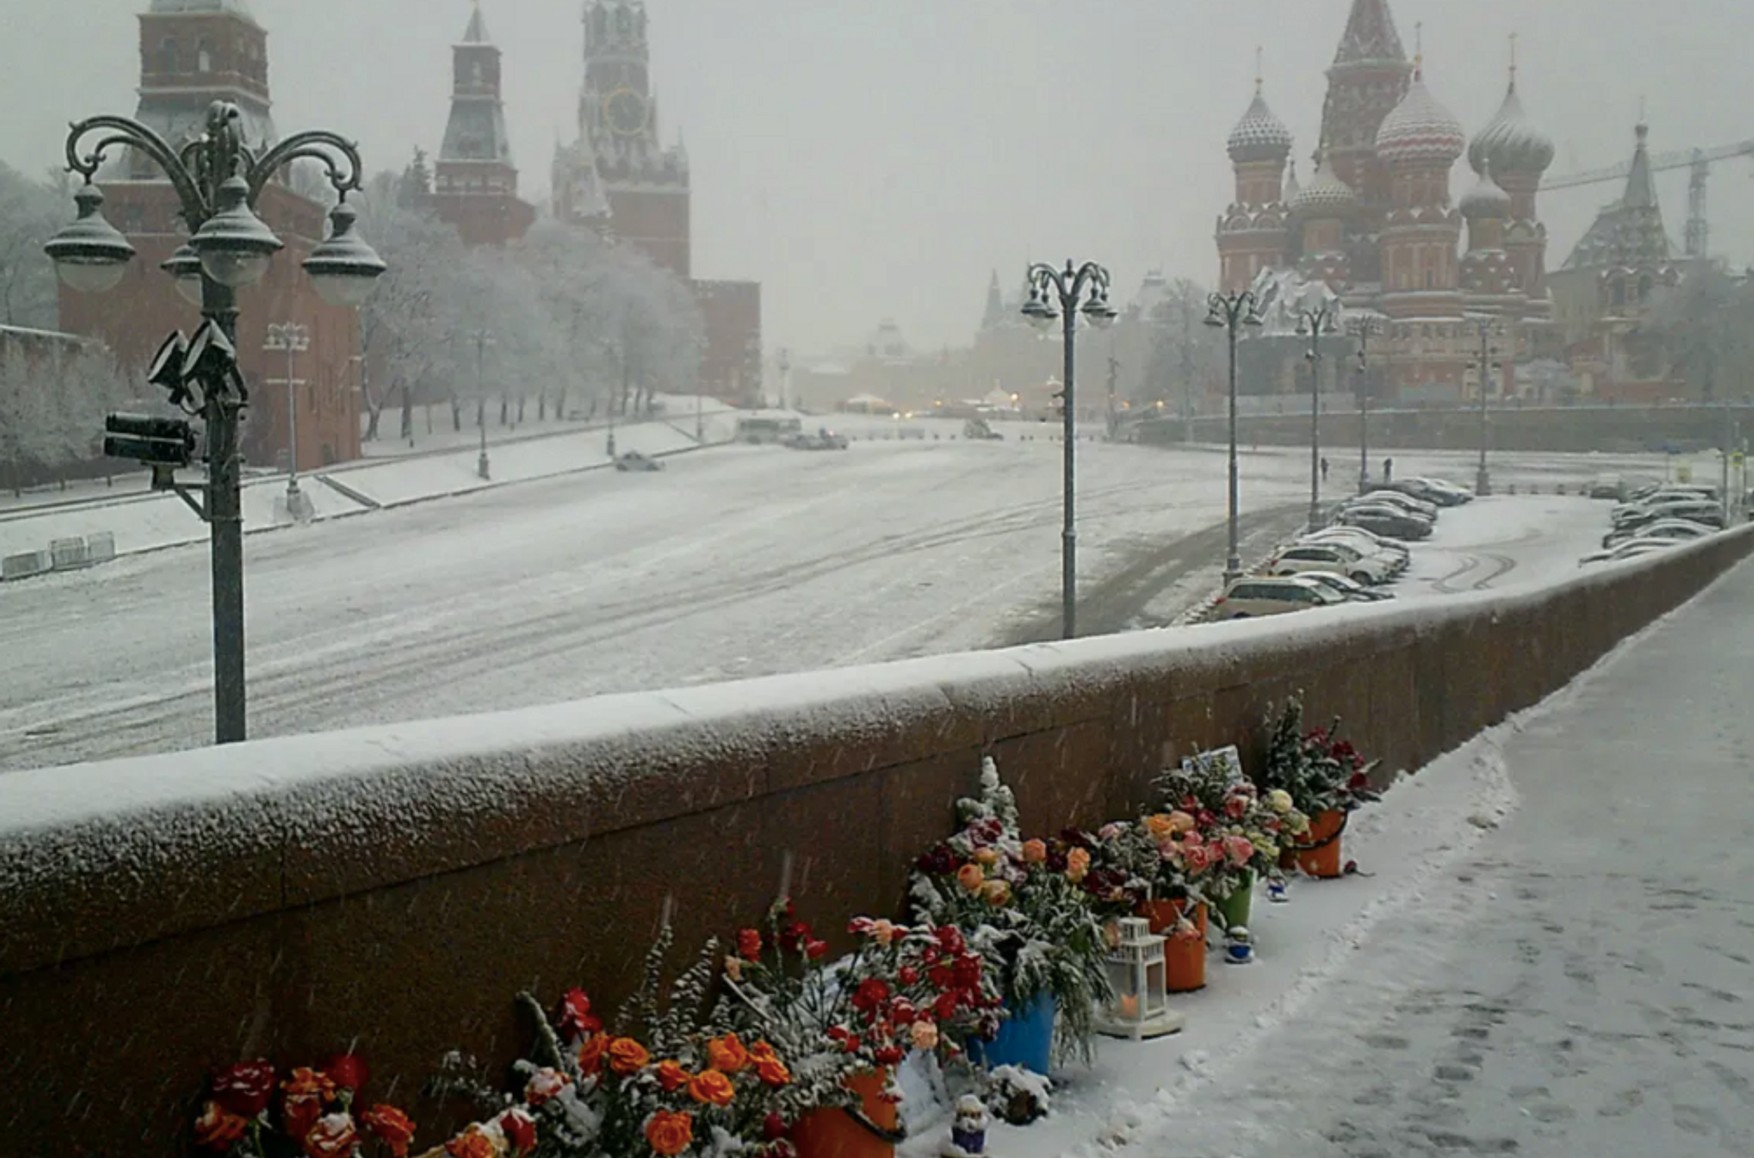 Організатори маршу пам'яті Бориса Нємцова запропонували покласти квіти на місце його вбивства замість ходи